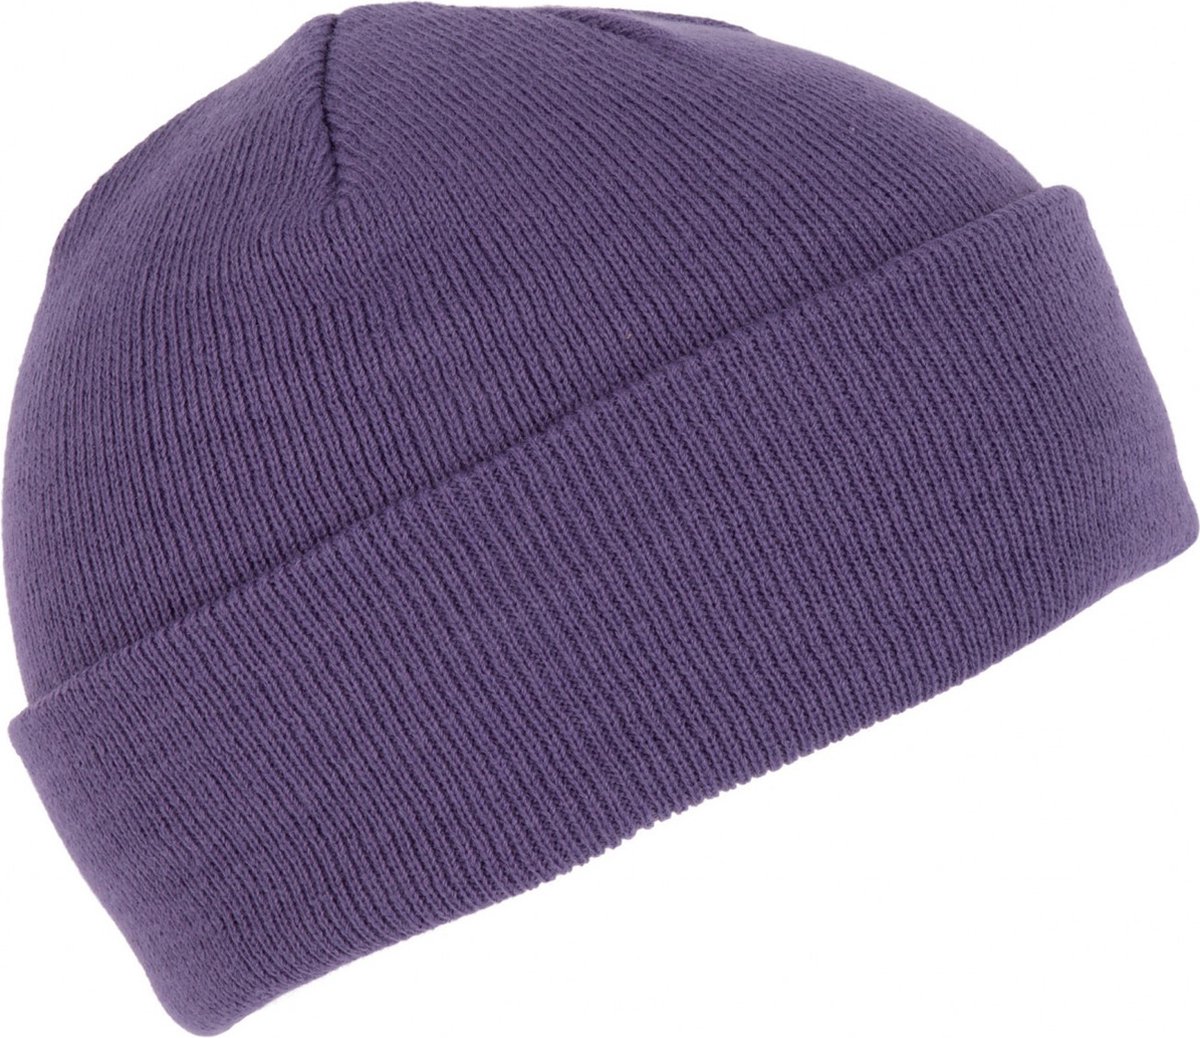 K-up Hats Wintermuts Beanie Yukon - paars - heren/dames - sterk/zacht/licht gebreid 100% Acryl - Dames/herenmuts